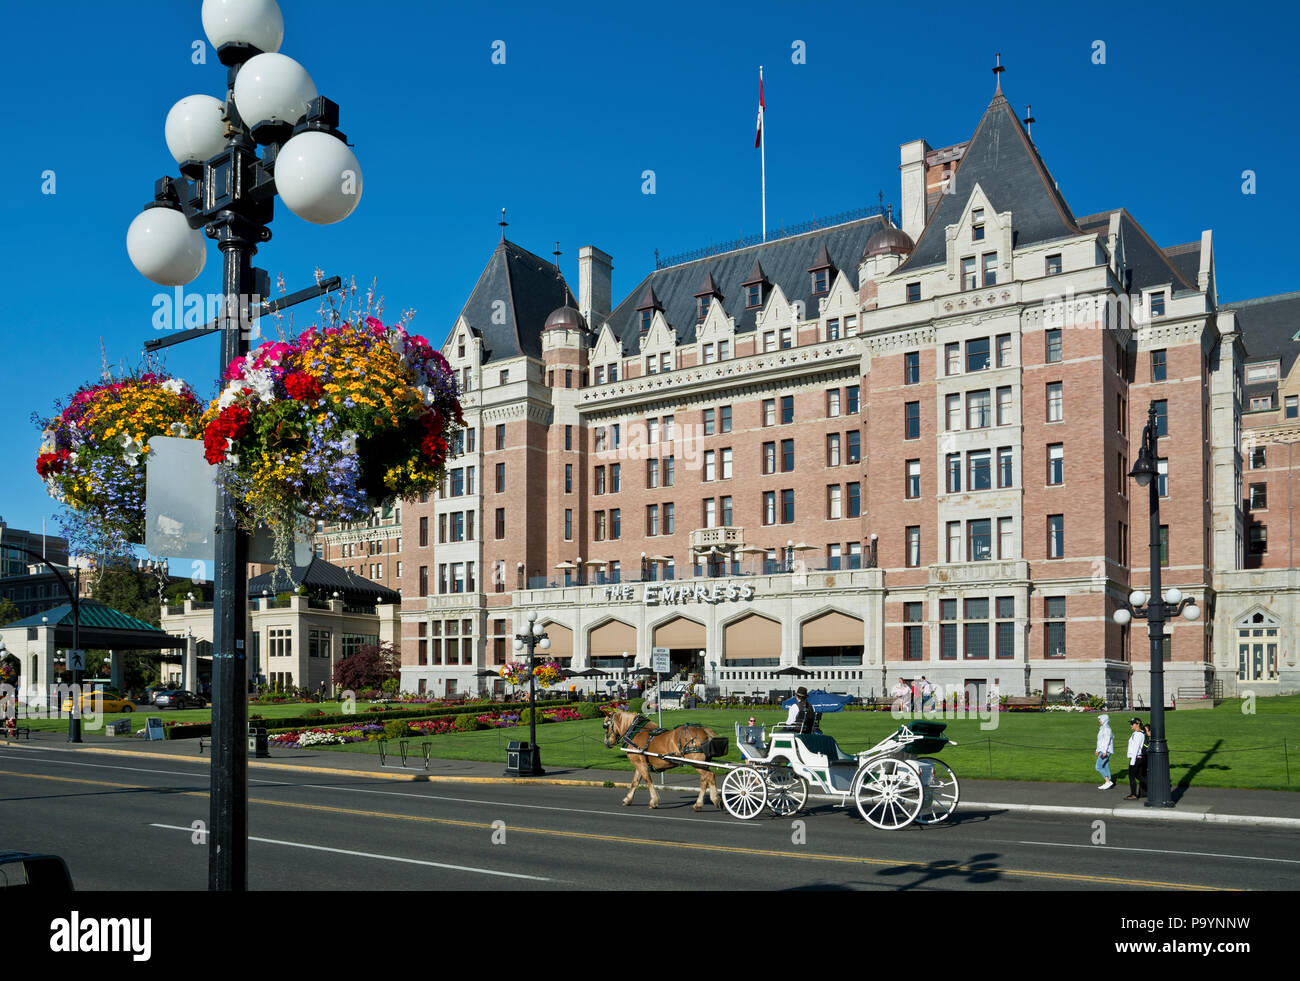 Hôtel Fairmont Empress à Victoria, BC, Canada. Victoria British Columbia Canada Empress Hotel avec chariot à cheval en été 2018. Banque D'Images